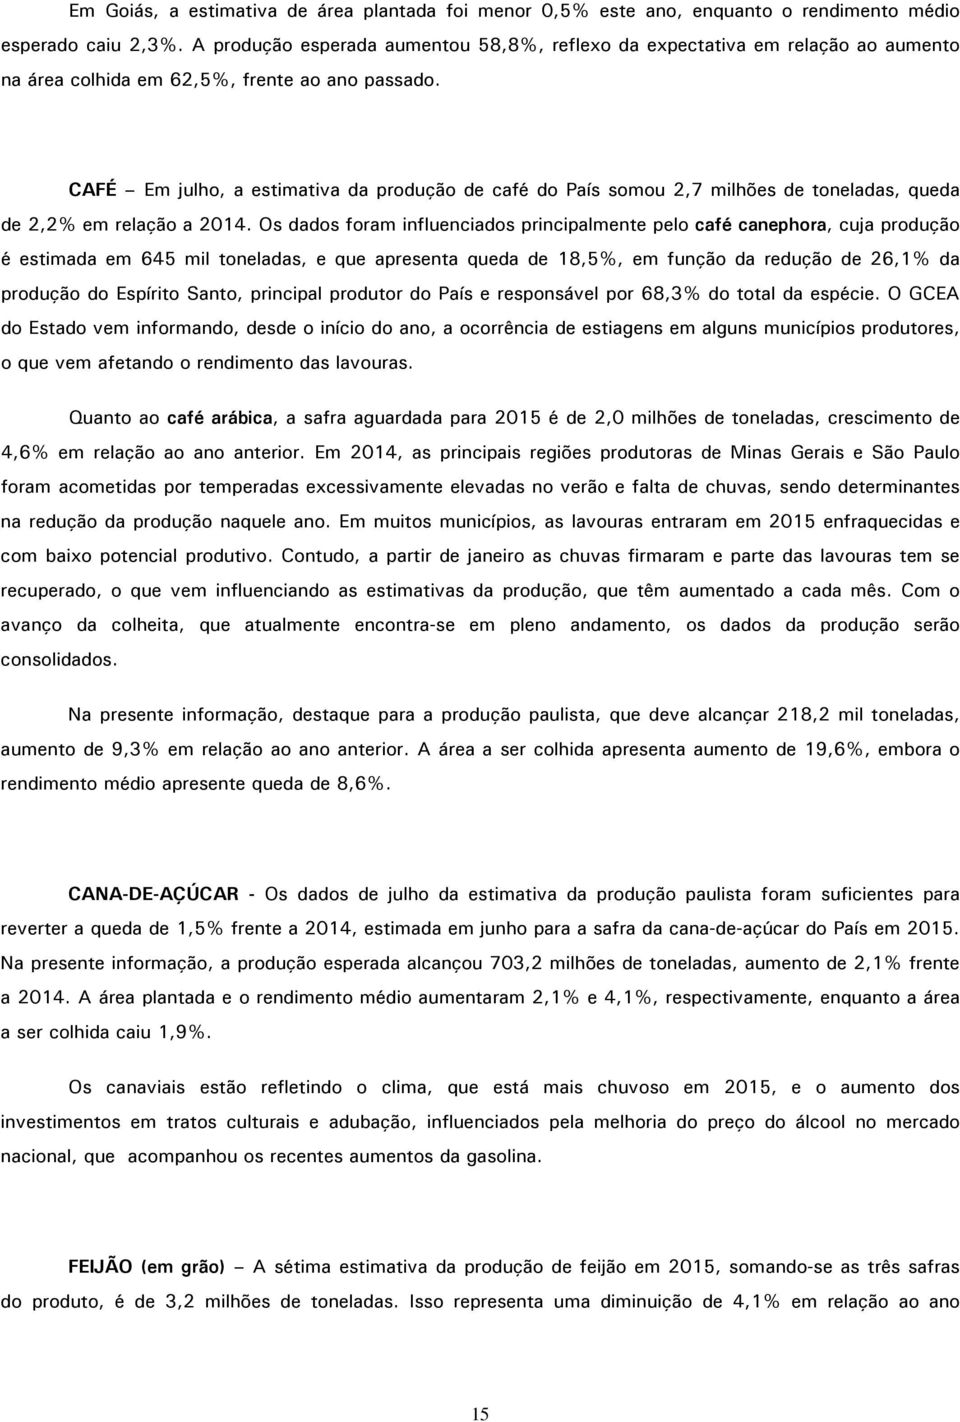 CAFÉ Em julho, a estimativa da produção de café do País somou 2,7 milhões de toneladas, queda de 2,2% em relação a 2014.